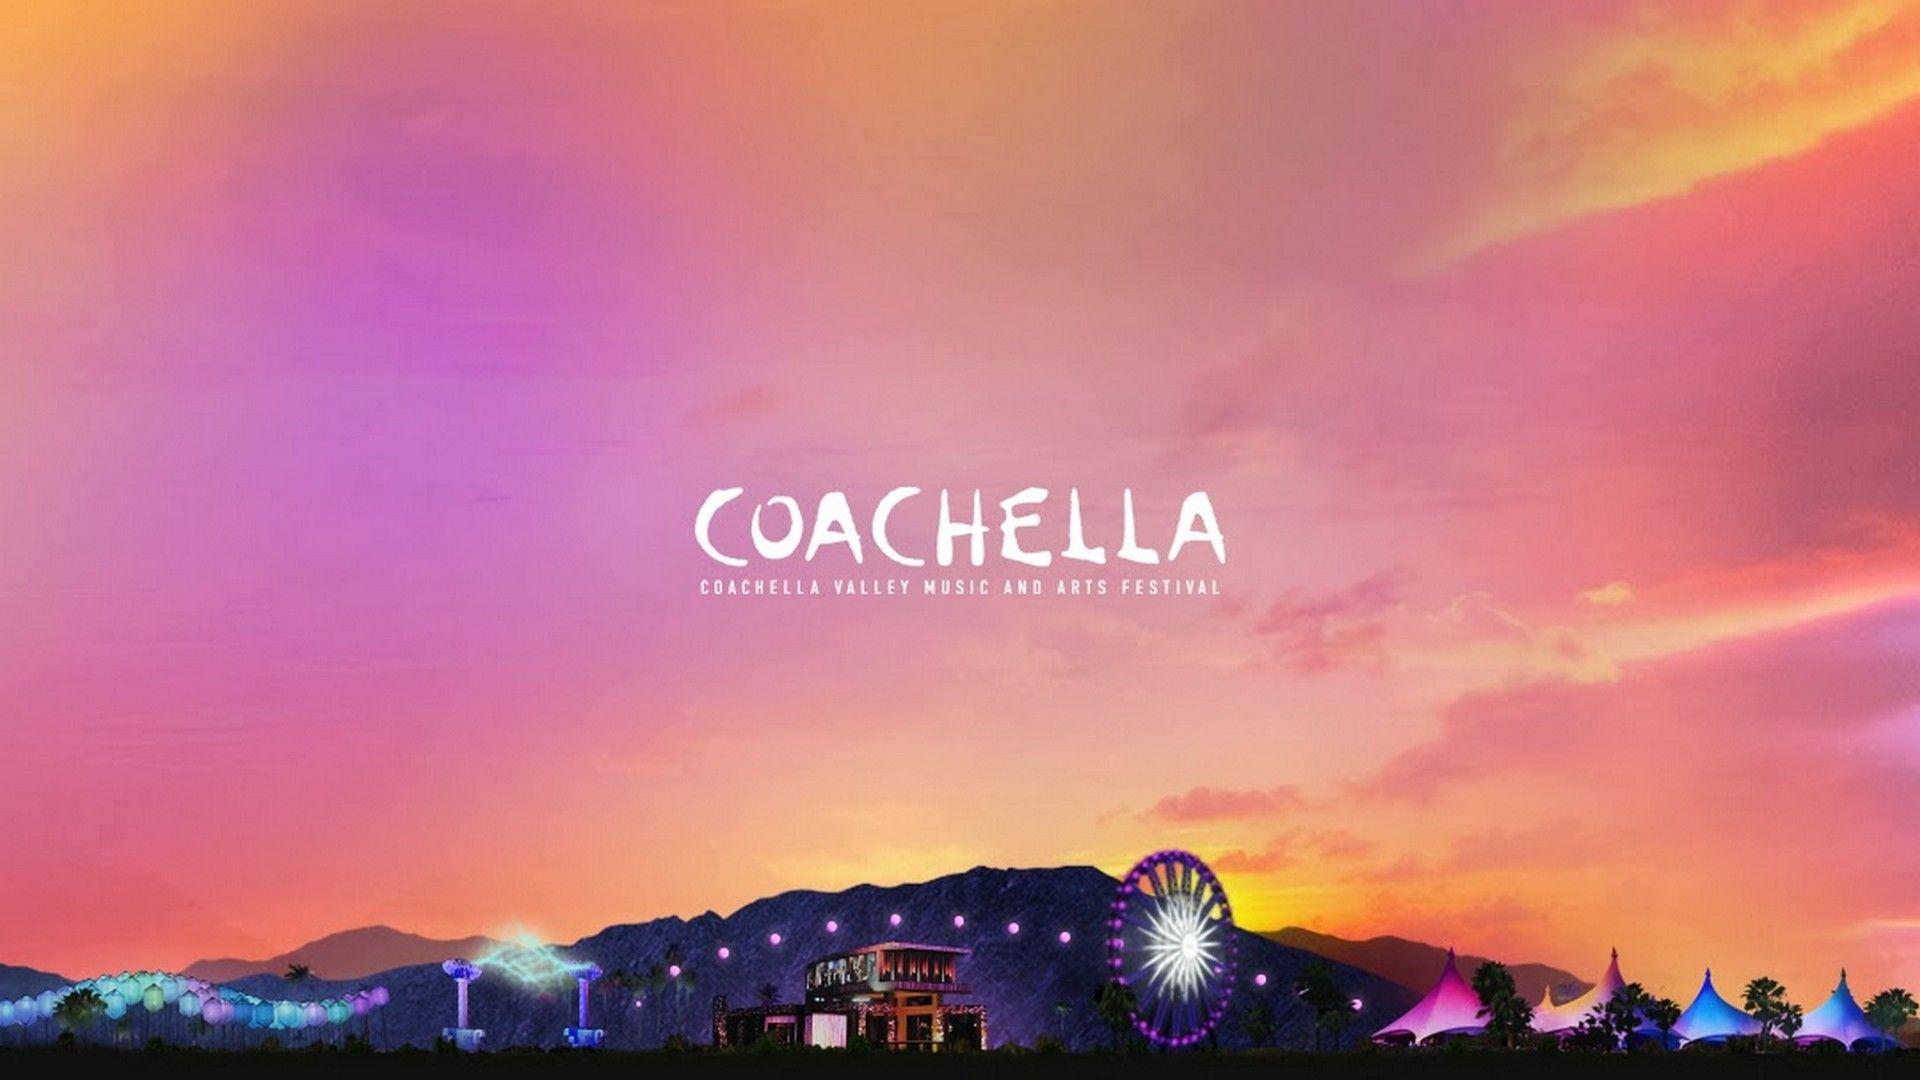 Best Coachella 2019 Wallpaper HD. Coachella, Coachella 2016